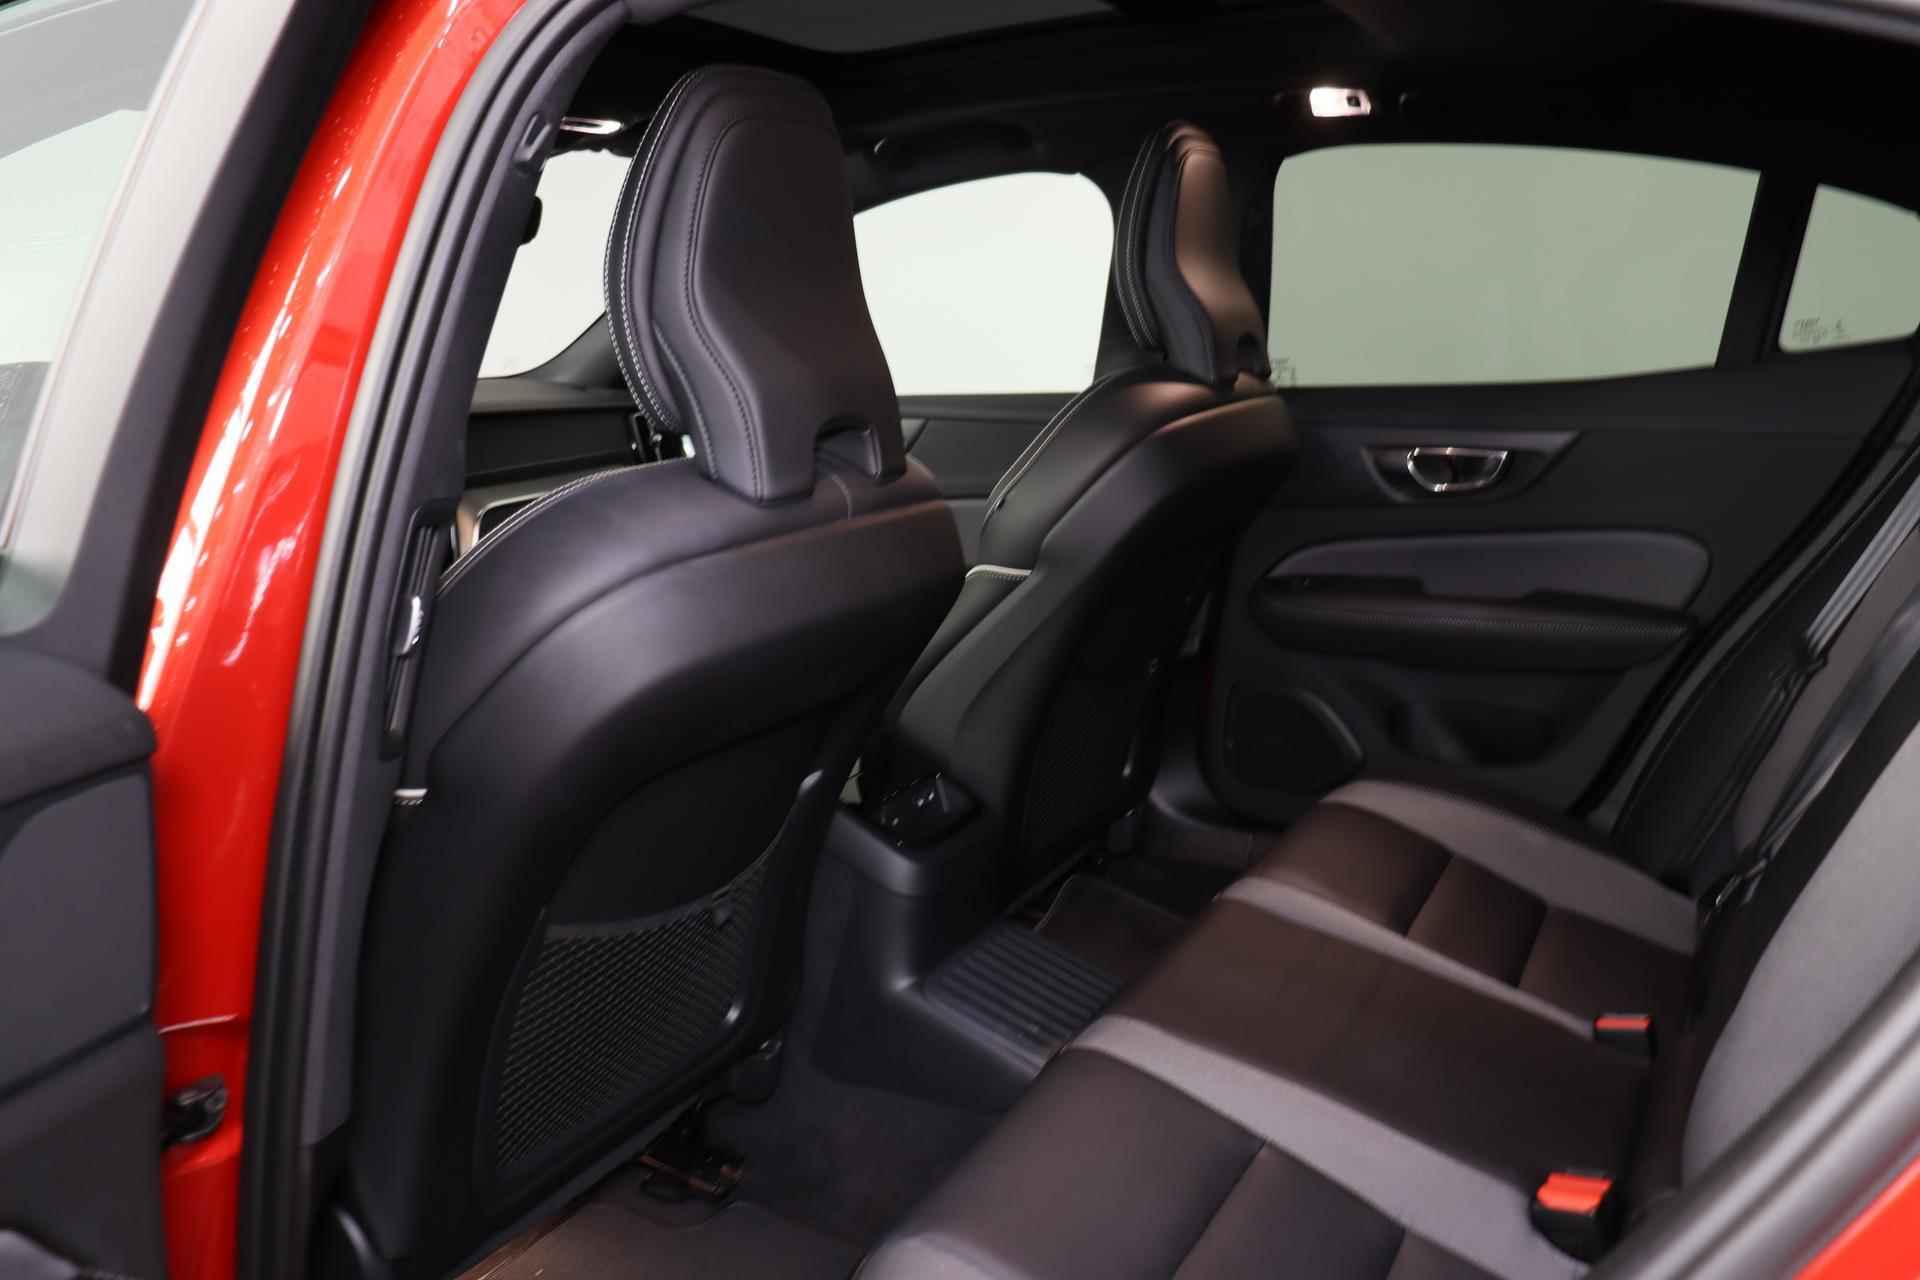 Volvo S60 Recharge T8 AWD R-Design - Panorama/schuifdak - IntelliSafe Assist - Harman/Kardon audio - 360º Camera - Adaptieve LED koplampen - Verwarmde voorstoelen, stuur & achterbank - Parkeersensoren voor & achter - Elektr. bedienb. voorstoelen met geheugen - Standkachel - 19' LMV - 24/28